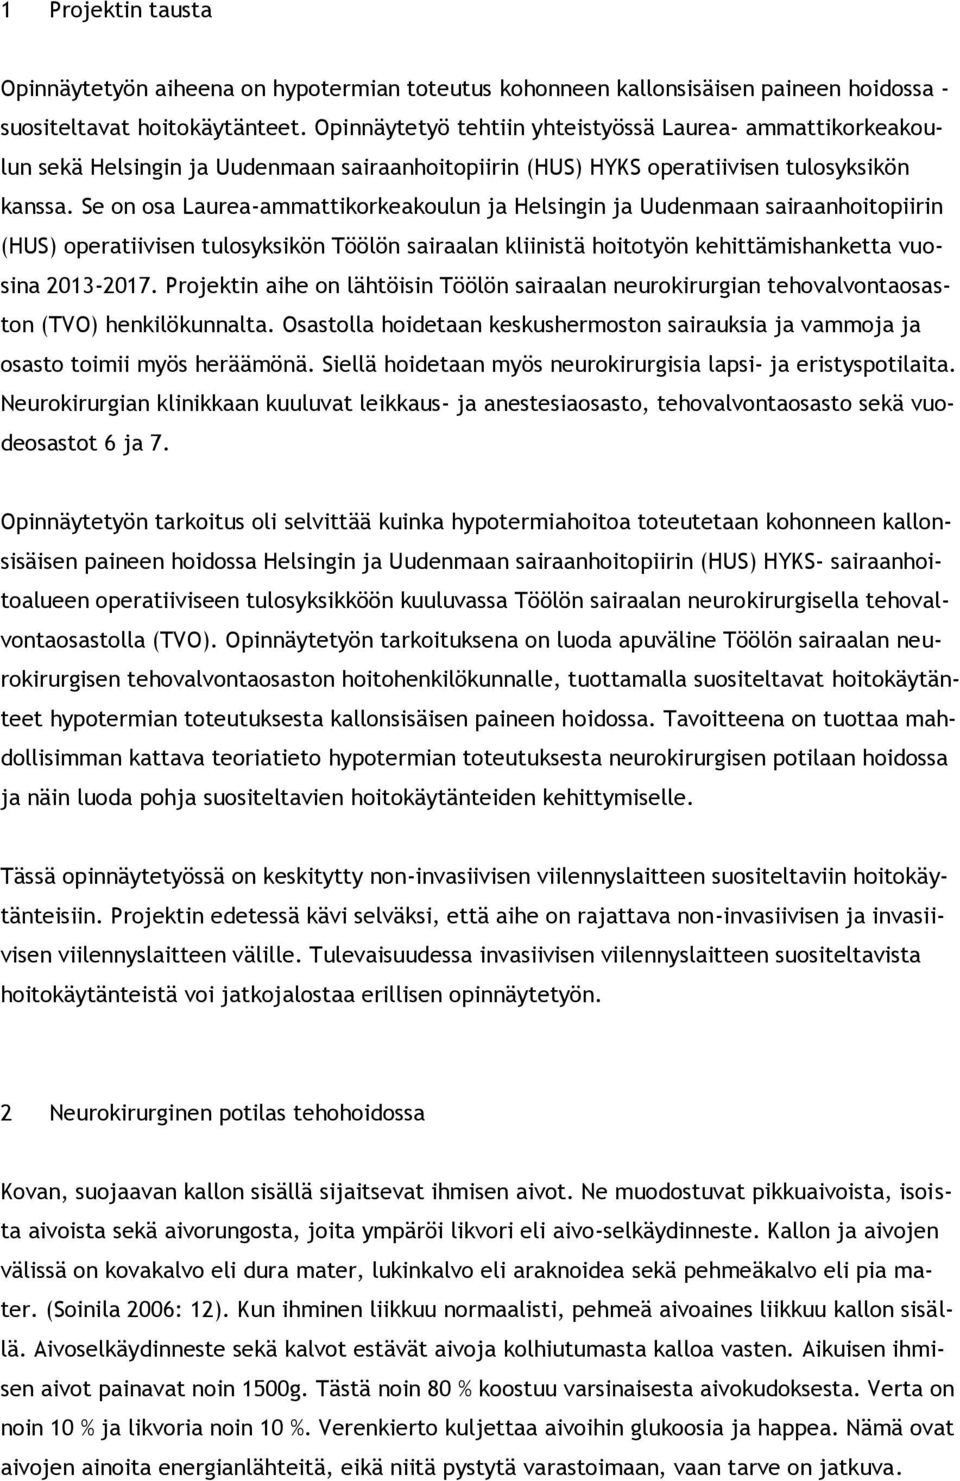 Se on osa Laurea-ammattikorkeakoulun ja Helsingin ja Uudenmaan sairaanhoitopiirin (HUS) operatiivisen tulosyksikön Töölön sairaalan kliinistä hoitotyön kehittämishanketta vuosina 2013-2017.